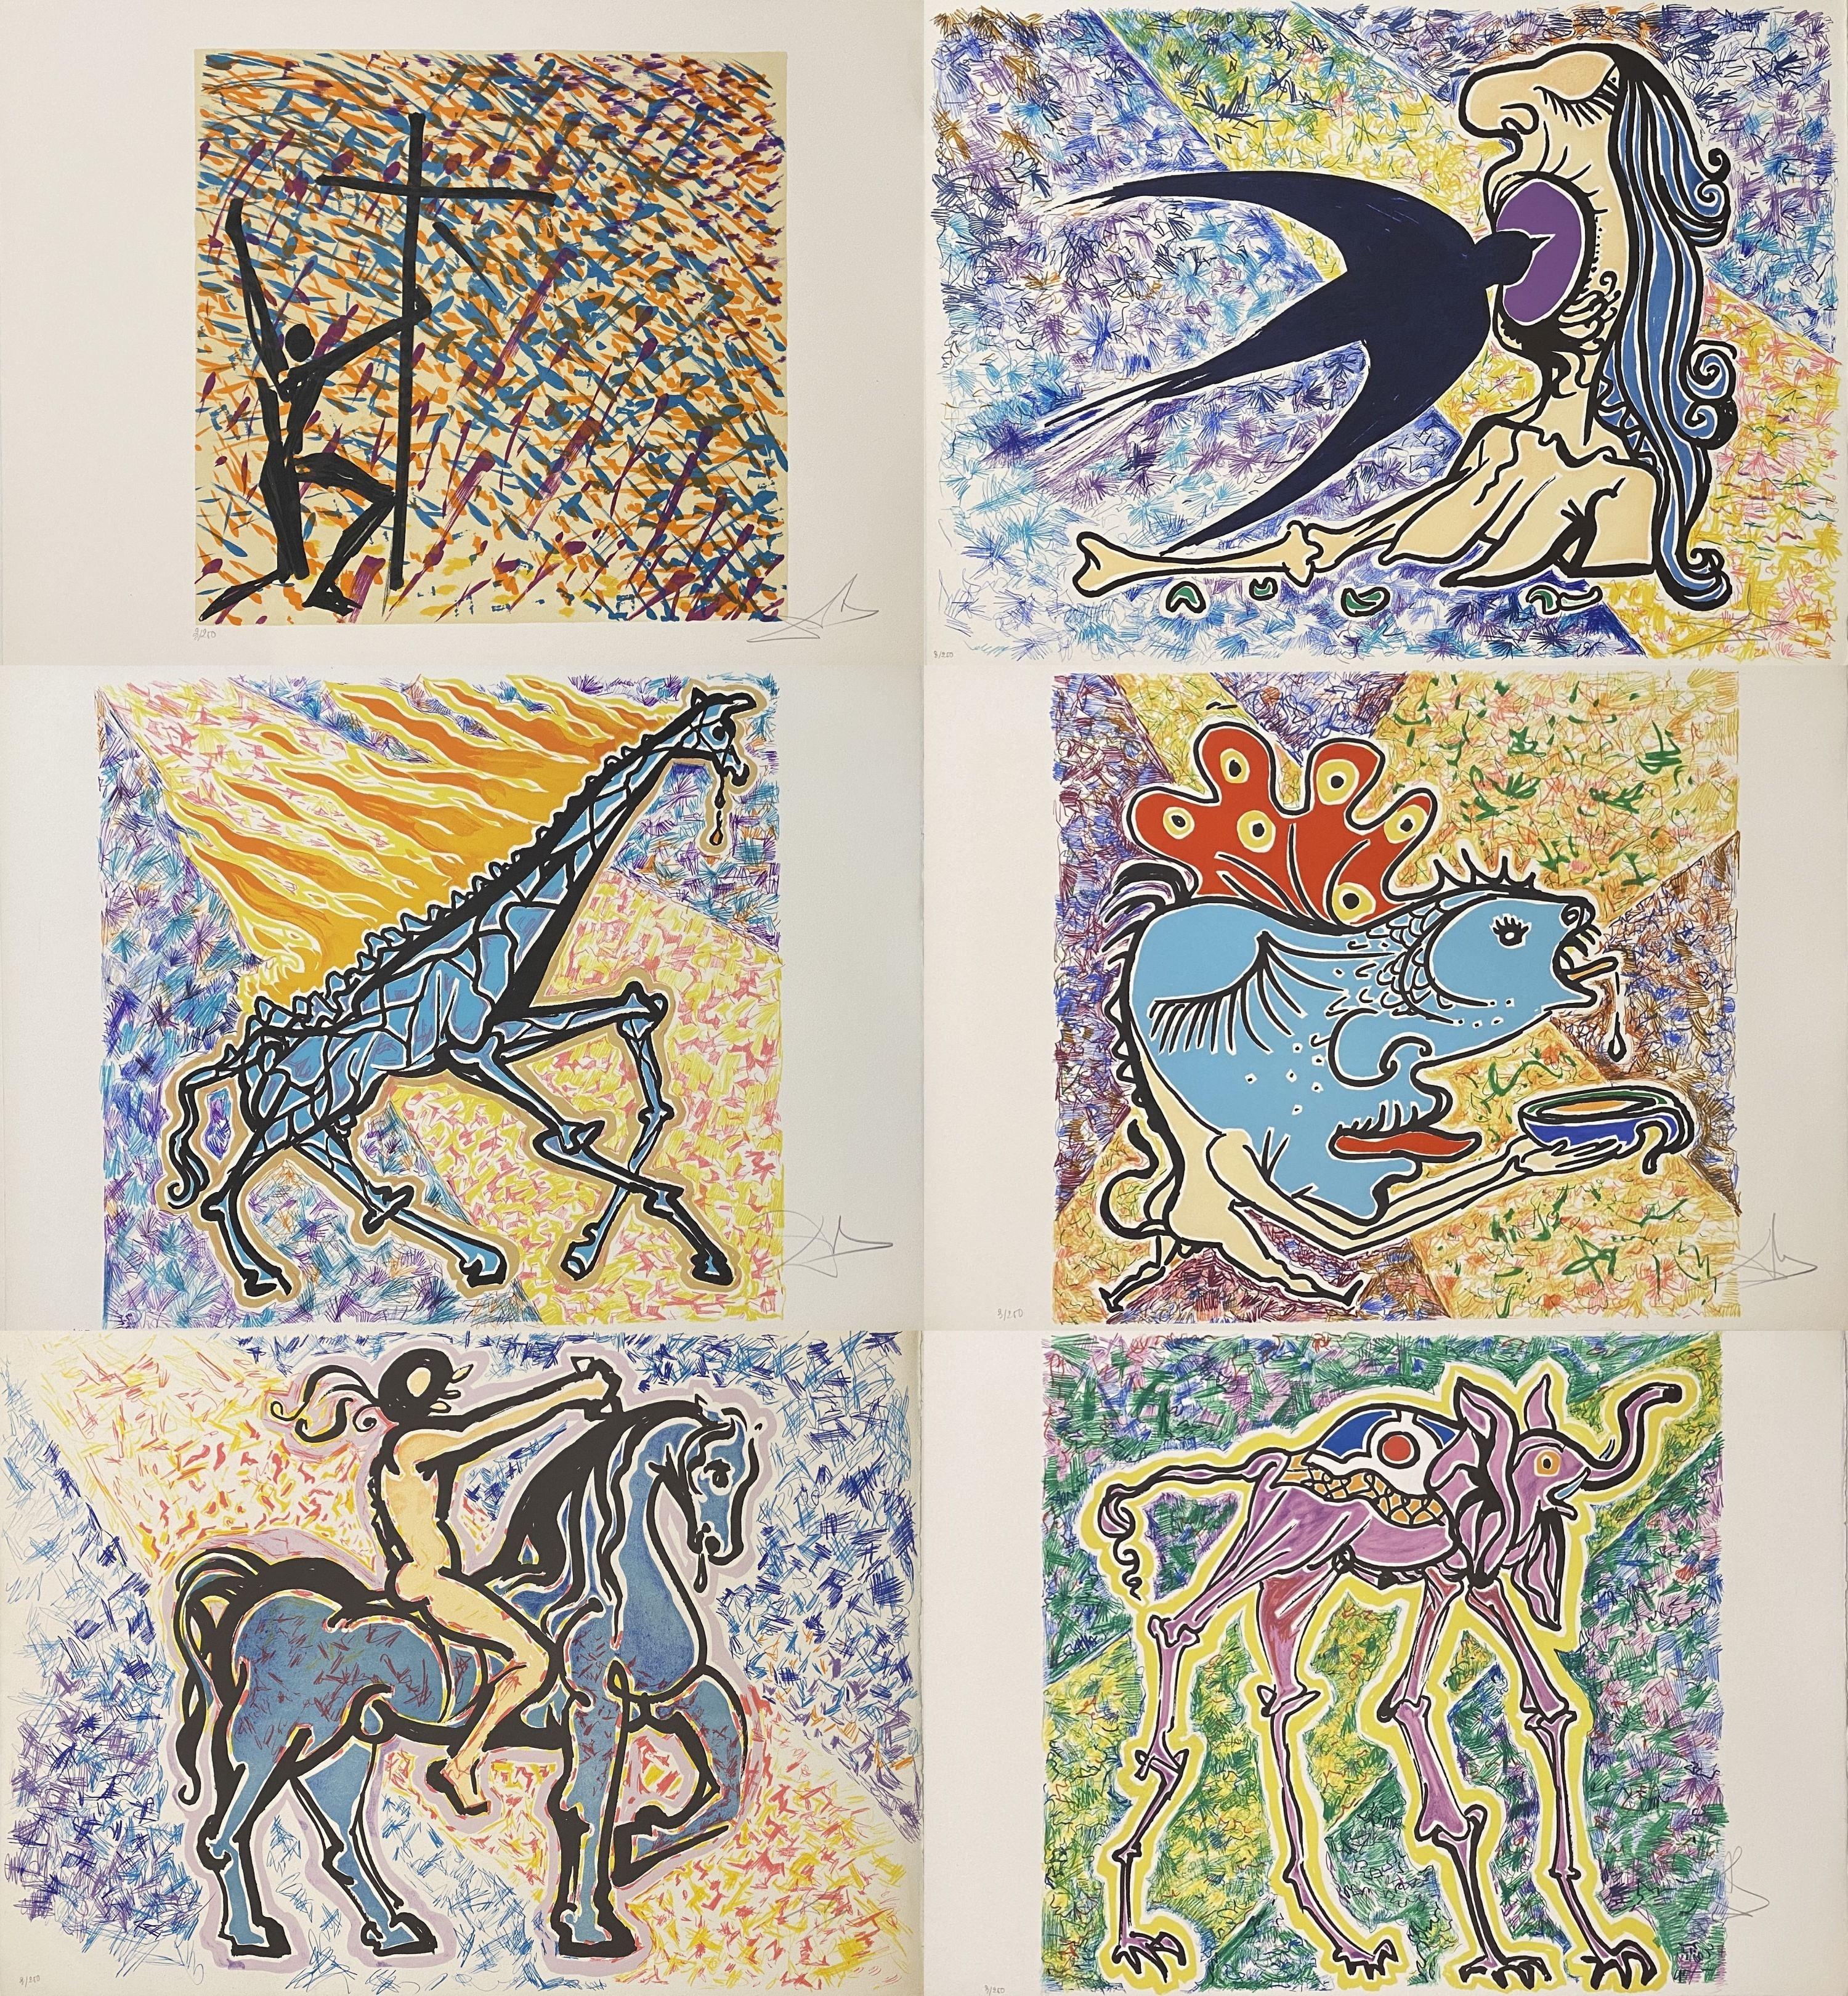 Vitraux - Ensemble complet de 24 lithographies signées à la main et/250 dans un coffret (feuille 74-5) - Gris Figurative Print par Salvador Dalí